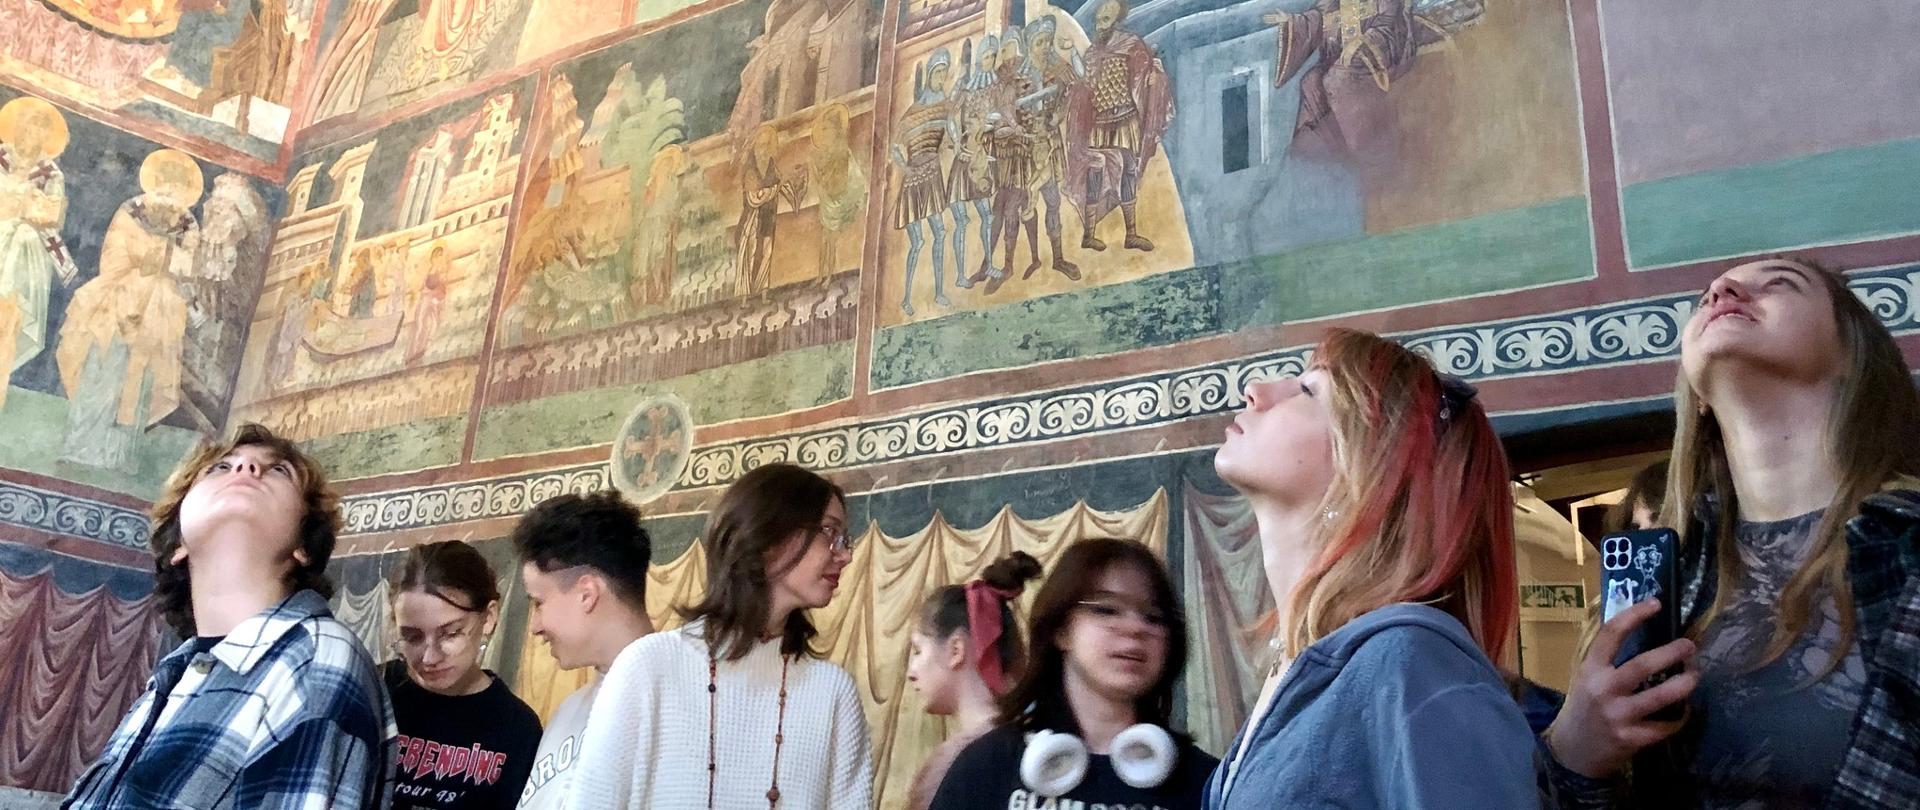 Uczniowie oglądają freski w Kaplicy Trójcy Świętej w Zamku Lubelskim w Lublinie. Niektóry z nich mają głowy zadarte do góry i uniesiony wzrok.